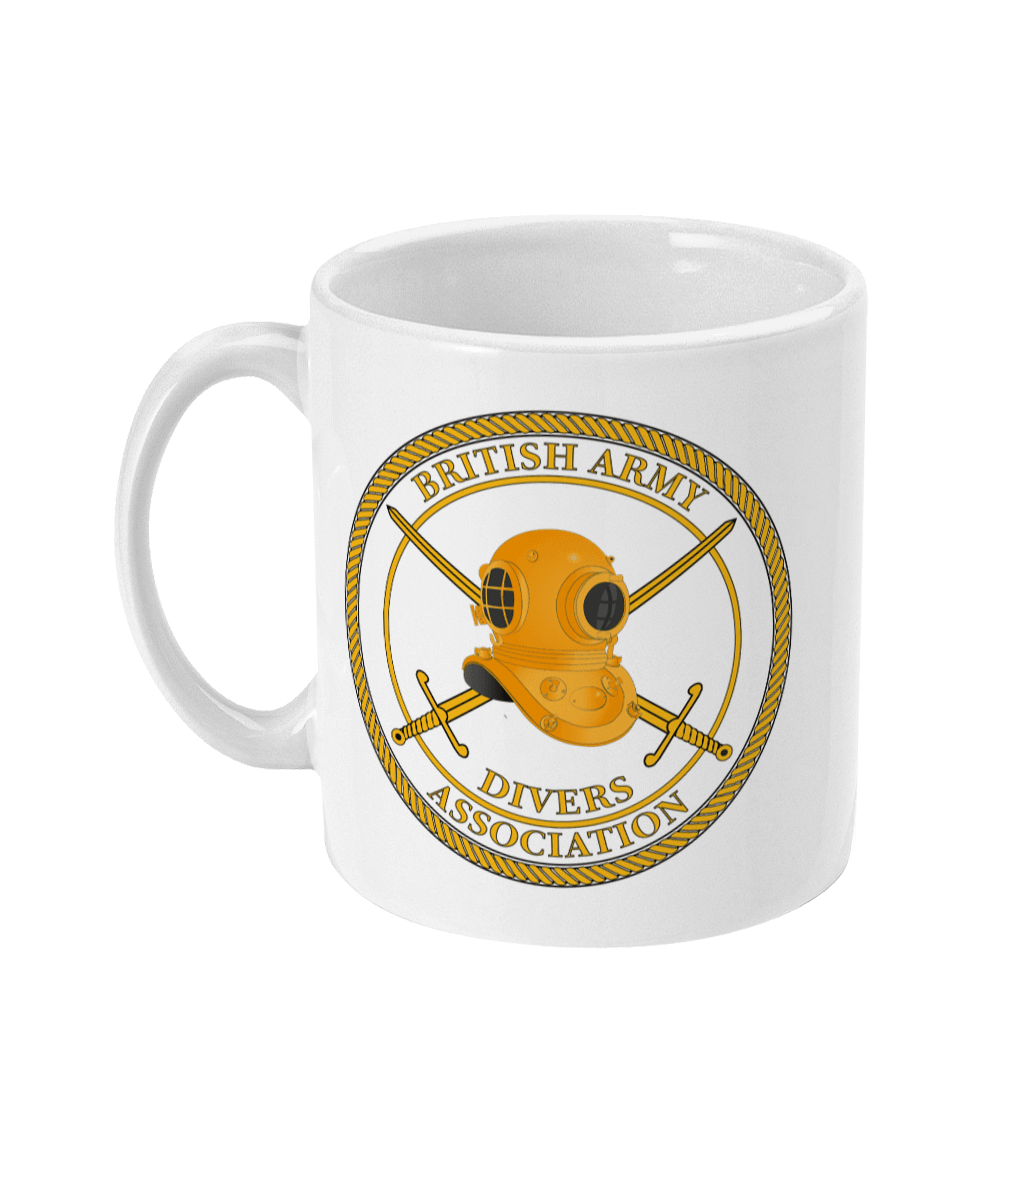 BADA - Ceramic Mug - Gold Logo - Divers Gifts